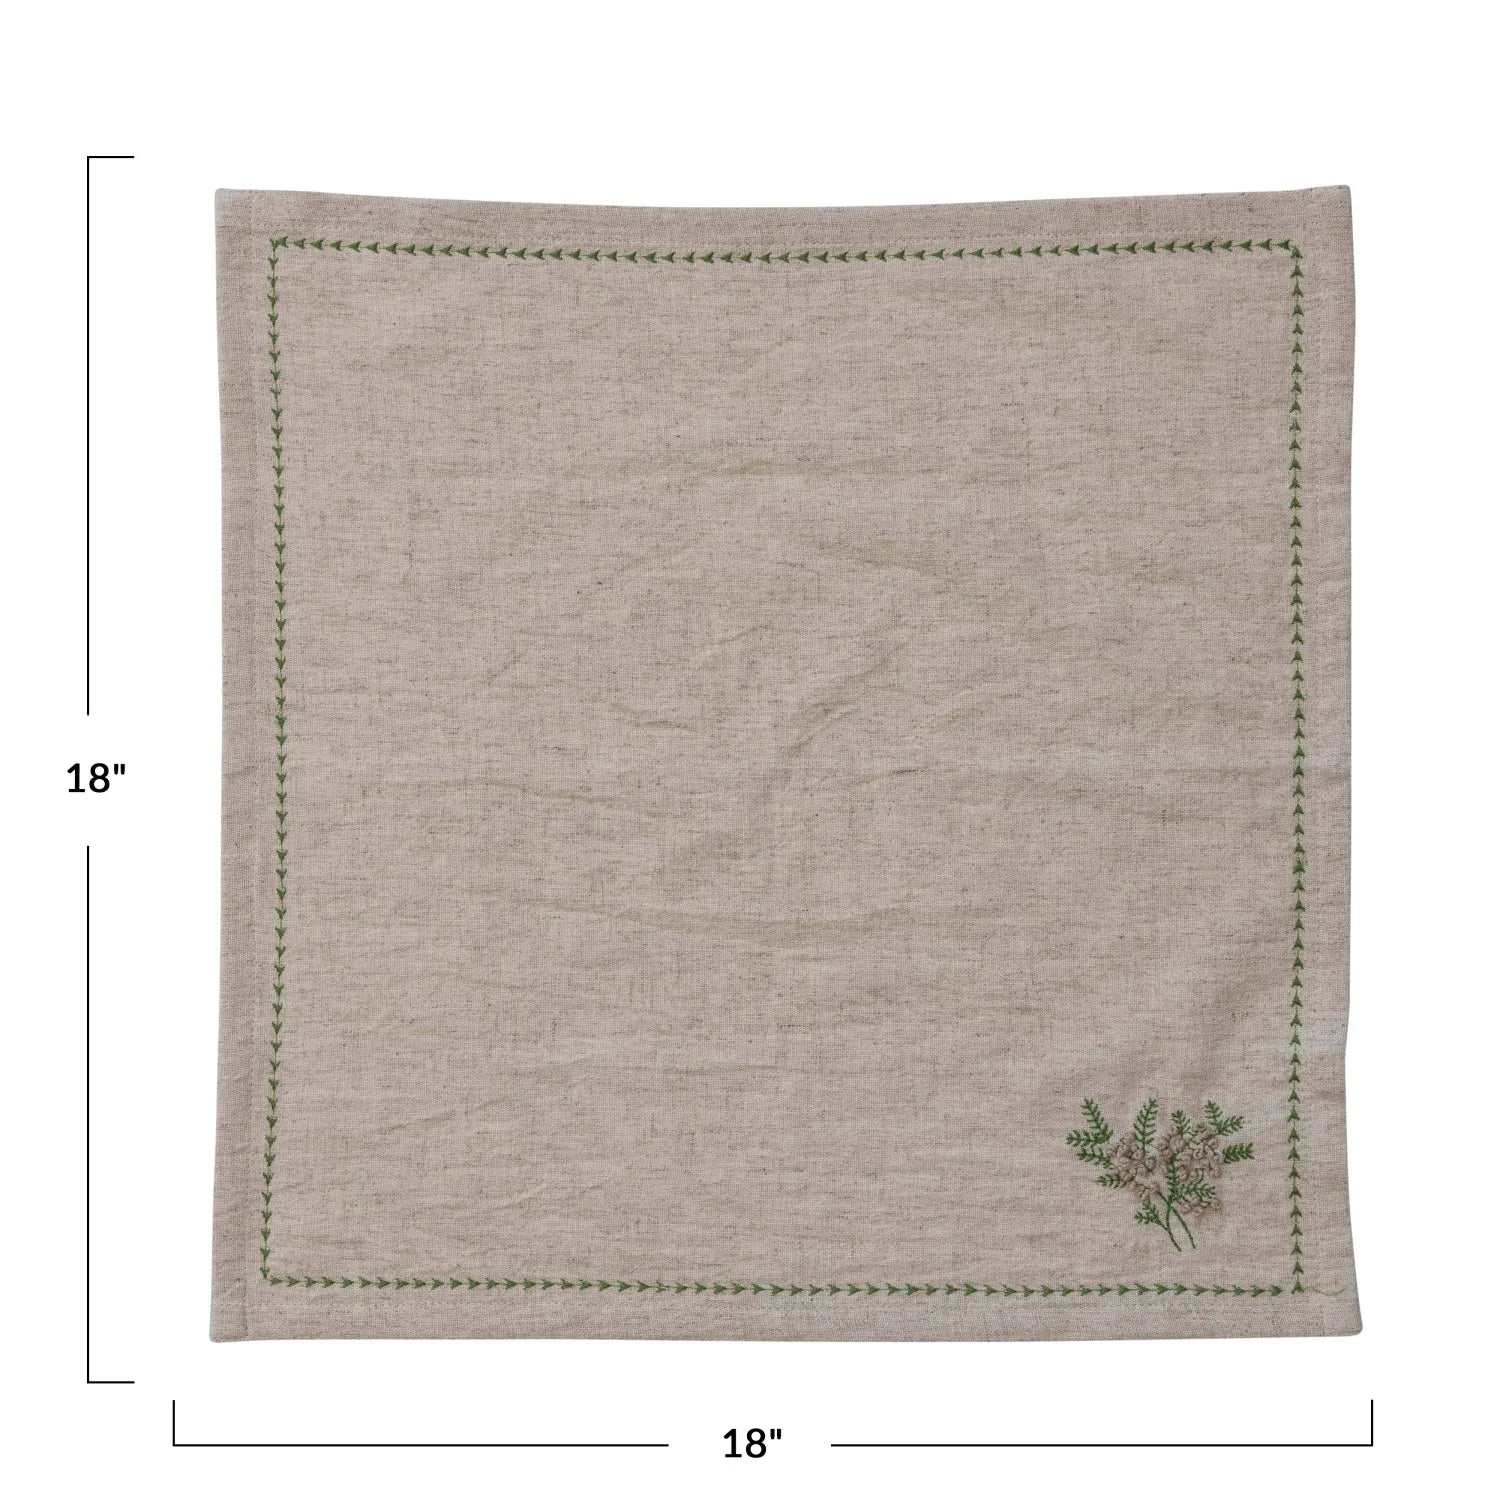 18-inch square cotton and linen napkin.